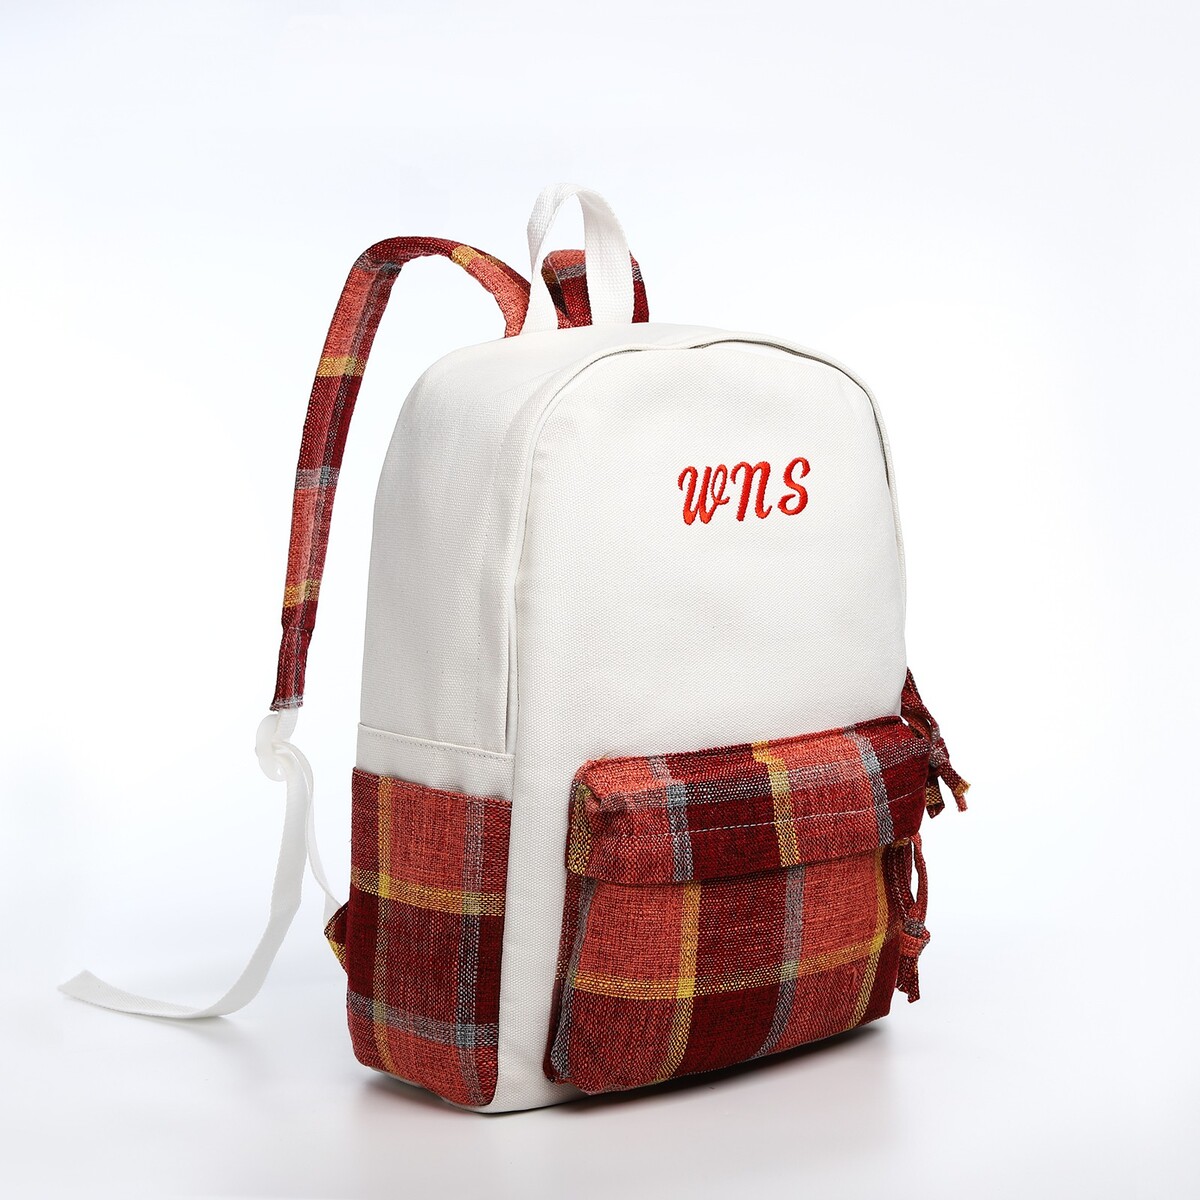 Рюкзак молодежный из текстиля, 3 кармана, цвет белый/коричневый/красный рюкзак школьный из текстиля на молнии 3 кармана пенал коричневый оранжевый